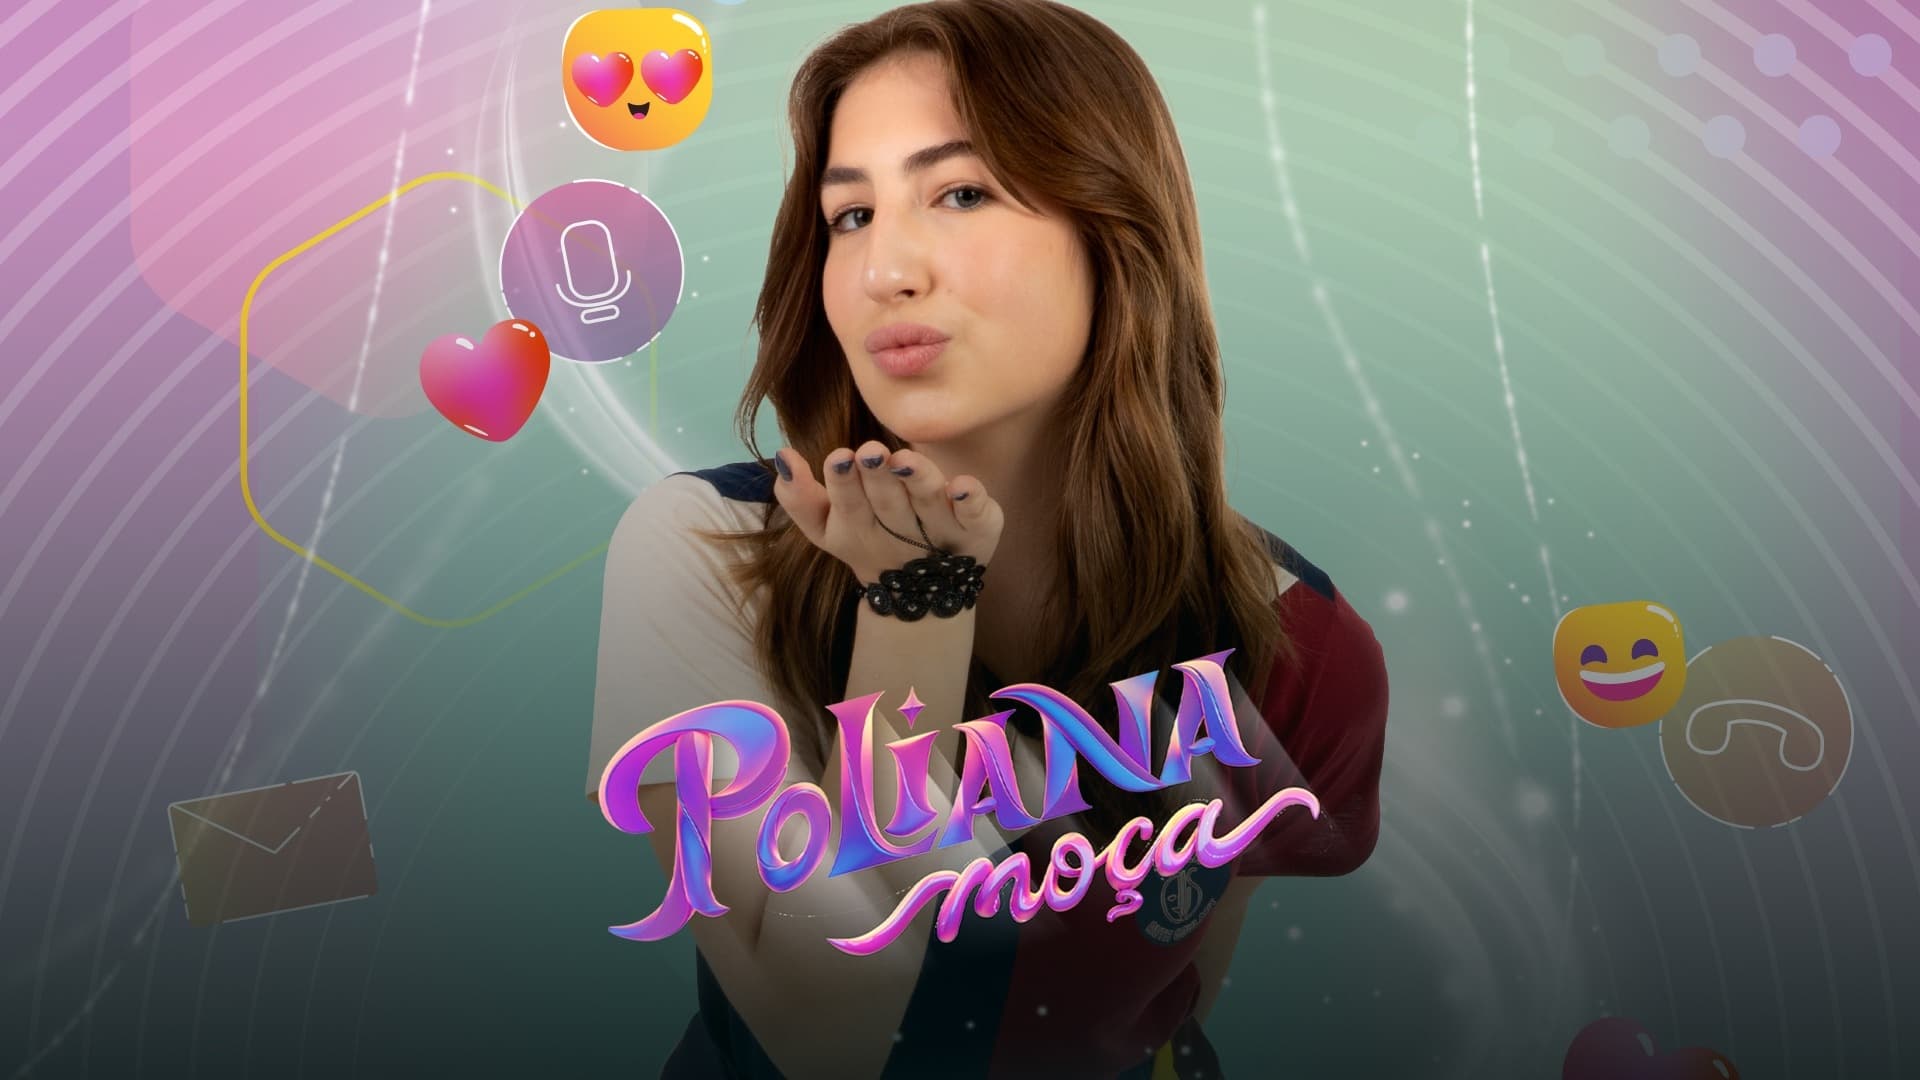 Poliana Moça - Season 1